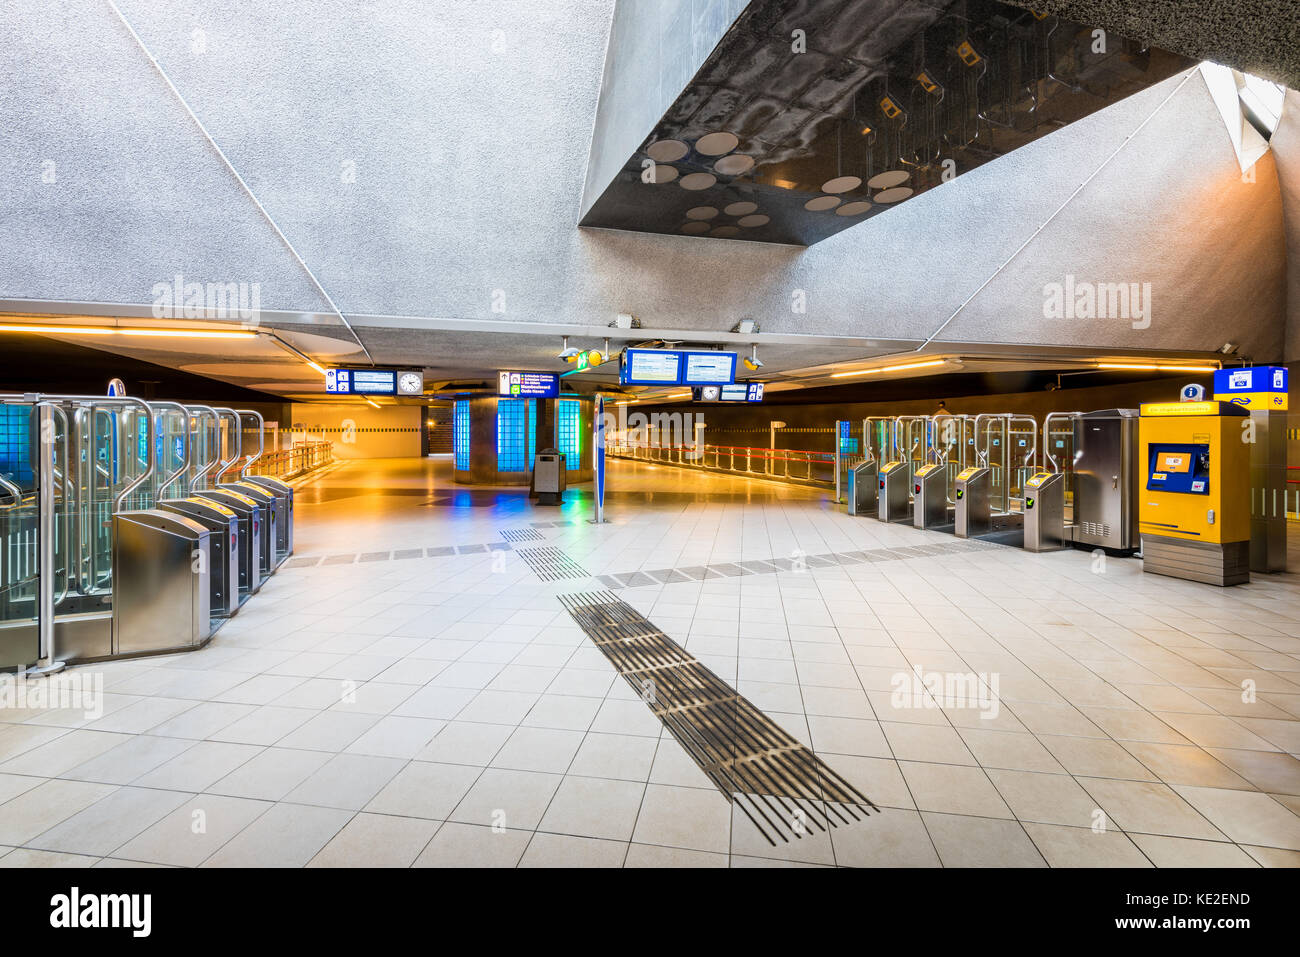 Les tourniquets à l'entrée de la gare et de la station de métro blaak blaak dans district de Rotterdam, Pays-Bas Banque D'Images